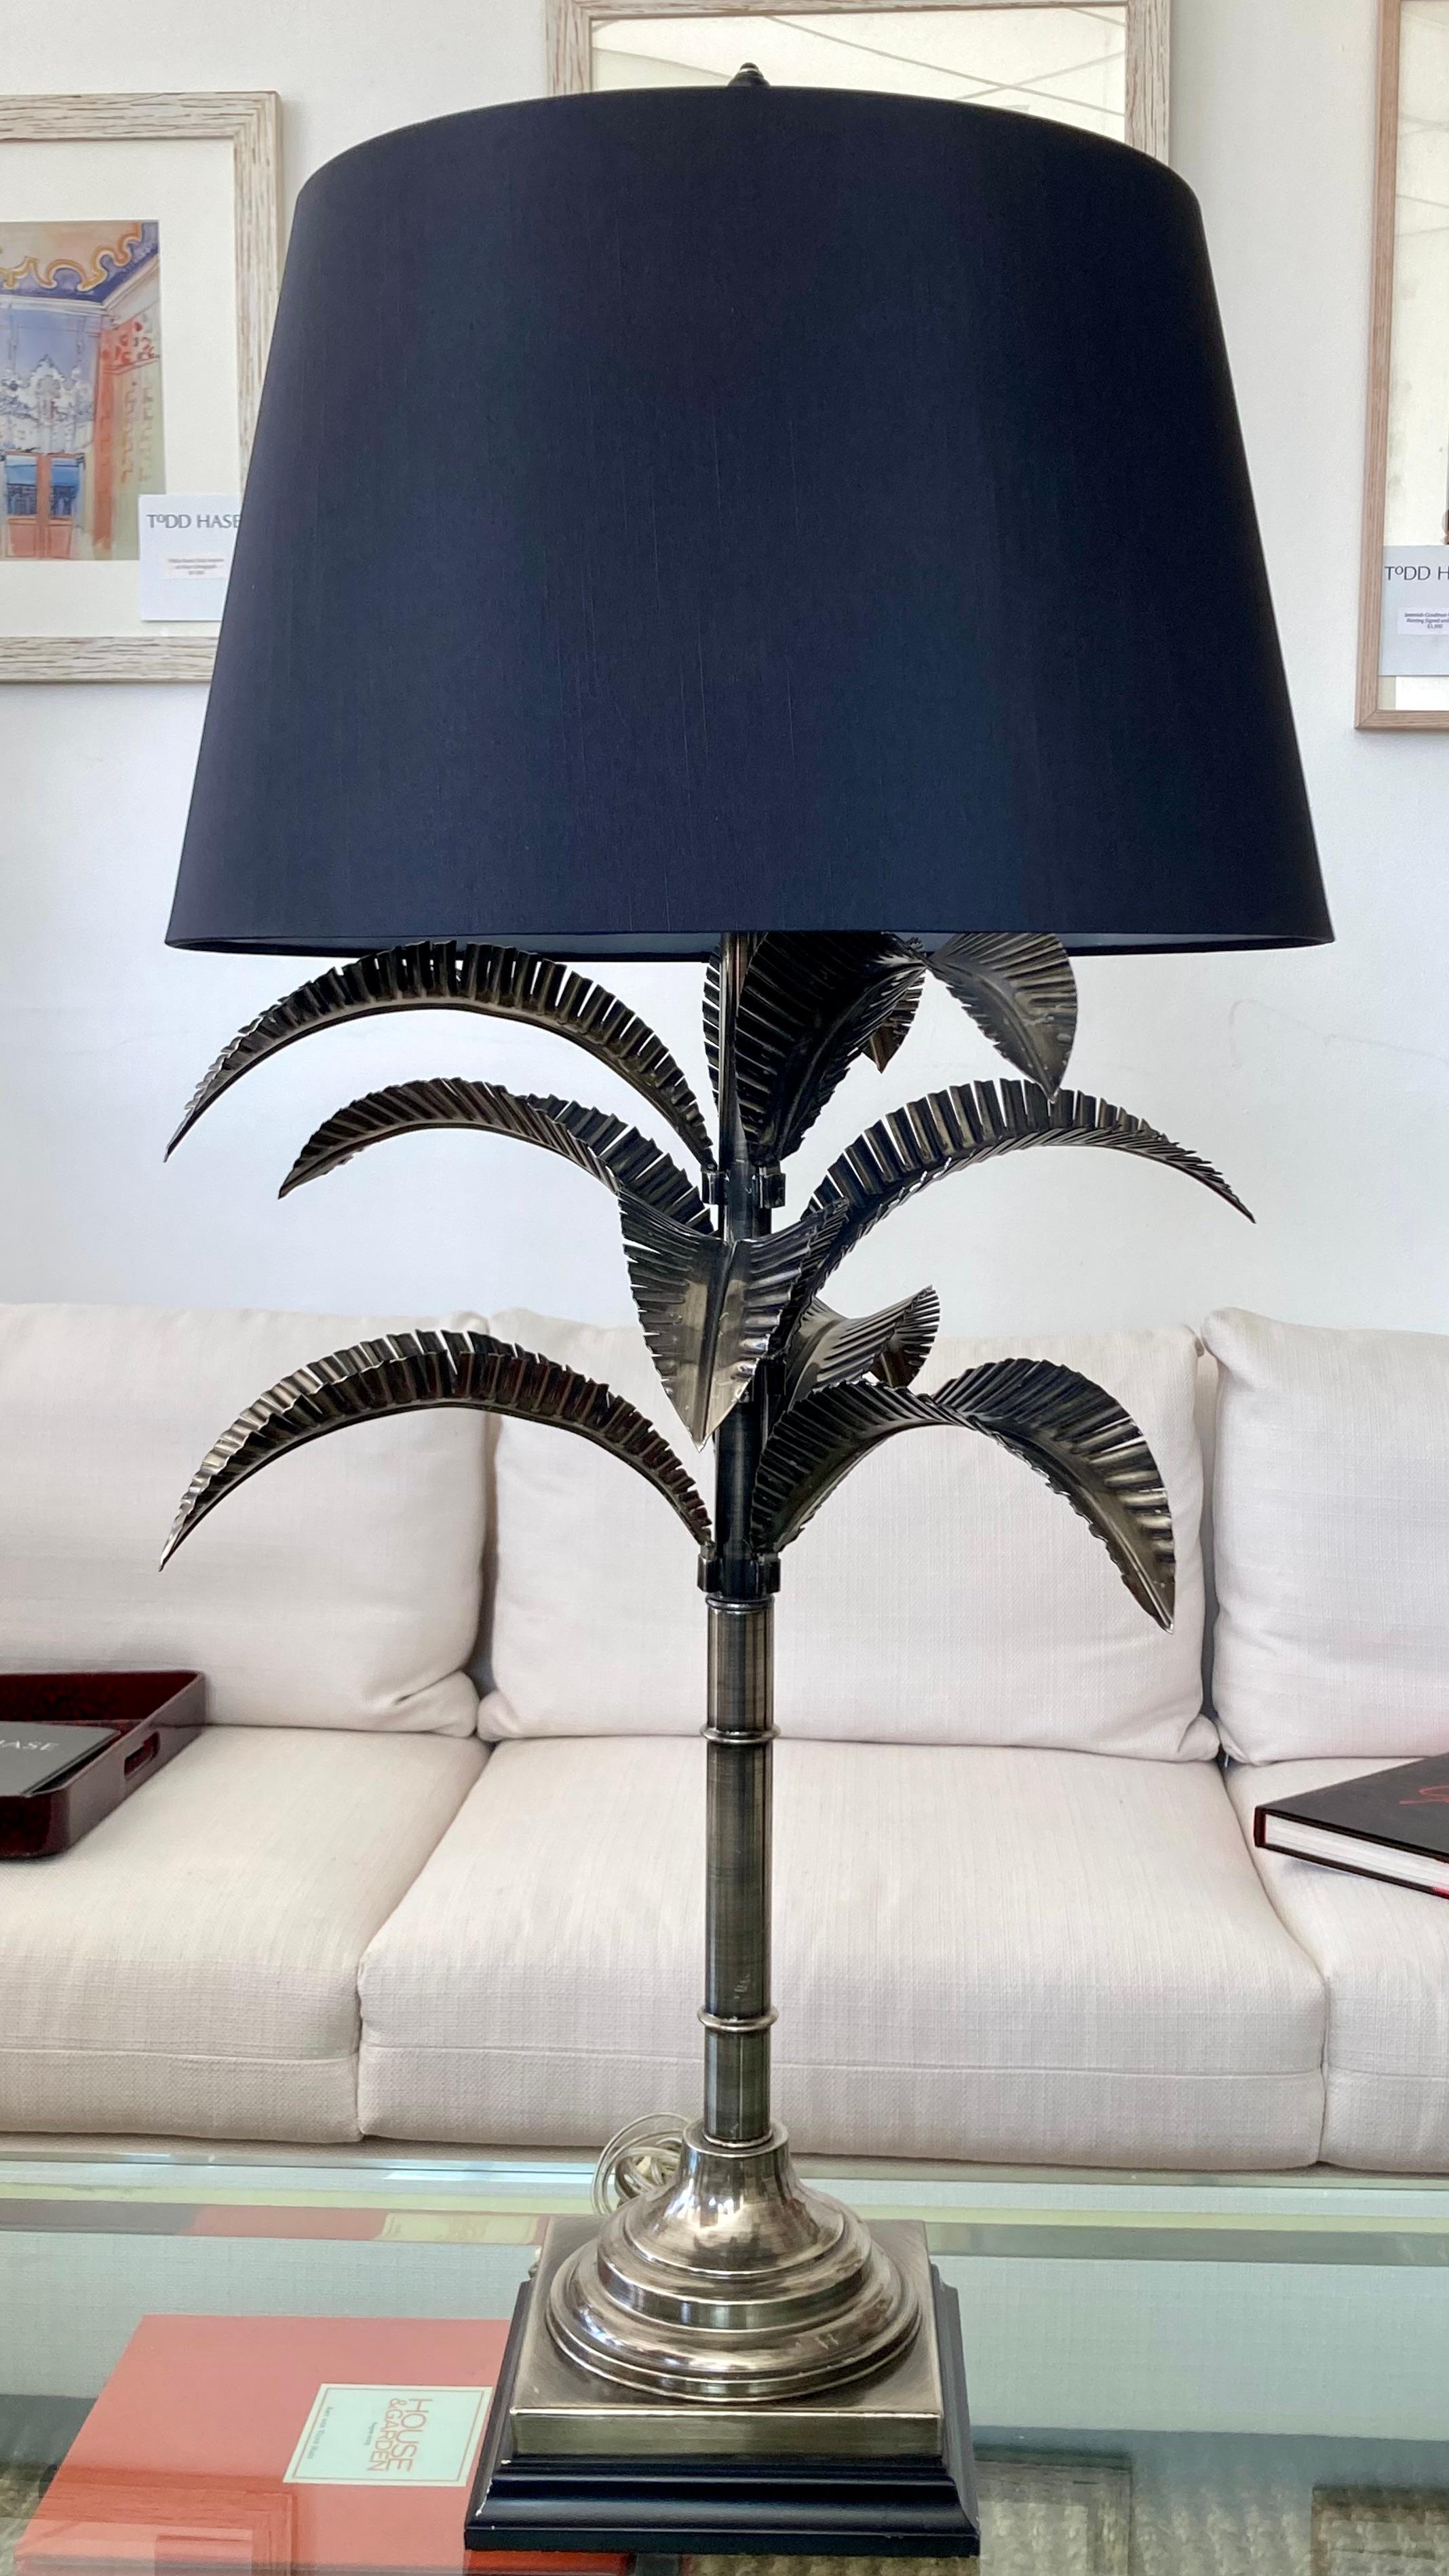 Magnifique lampe de table classique Jansen en métal avec palmier et abat-jour d'origine. Un excellent complément à vos intérieurs et pièces inspirés de Jansen.